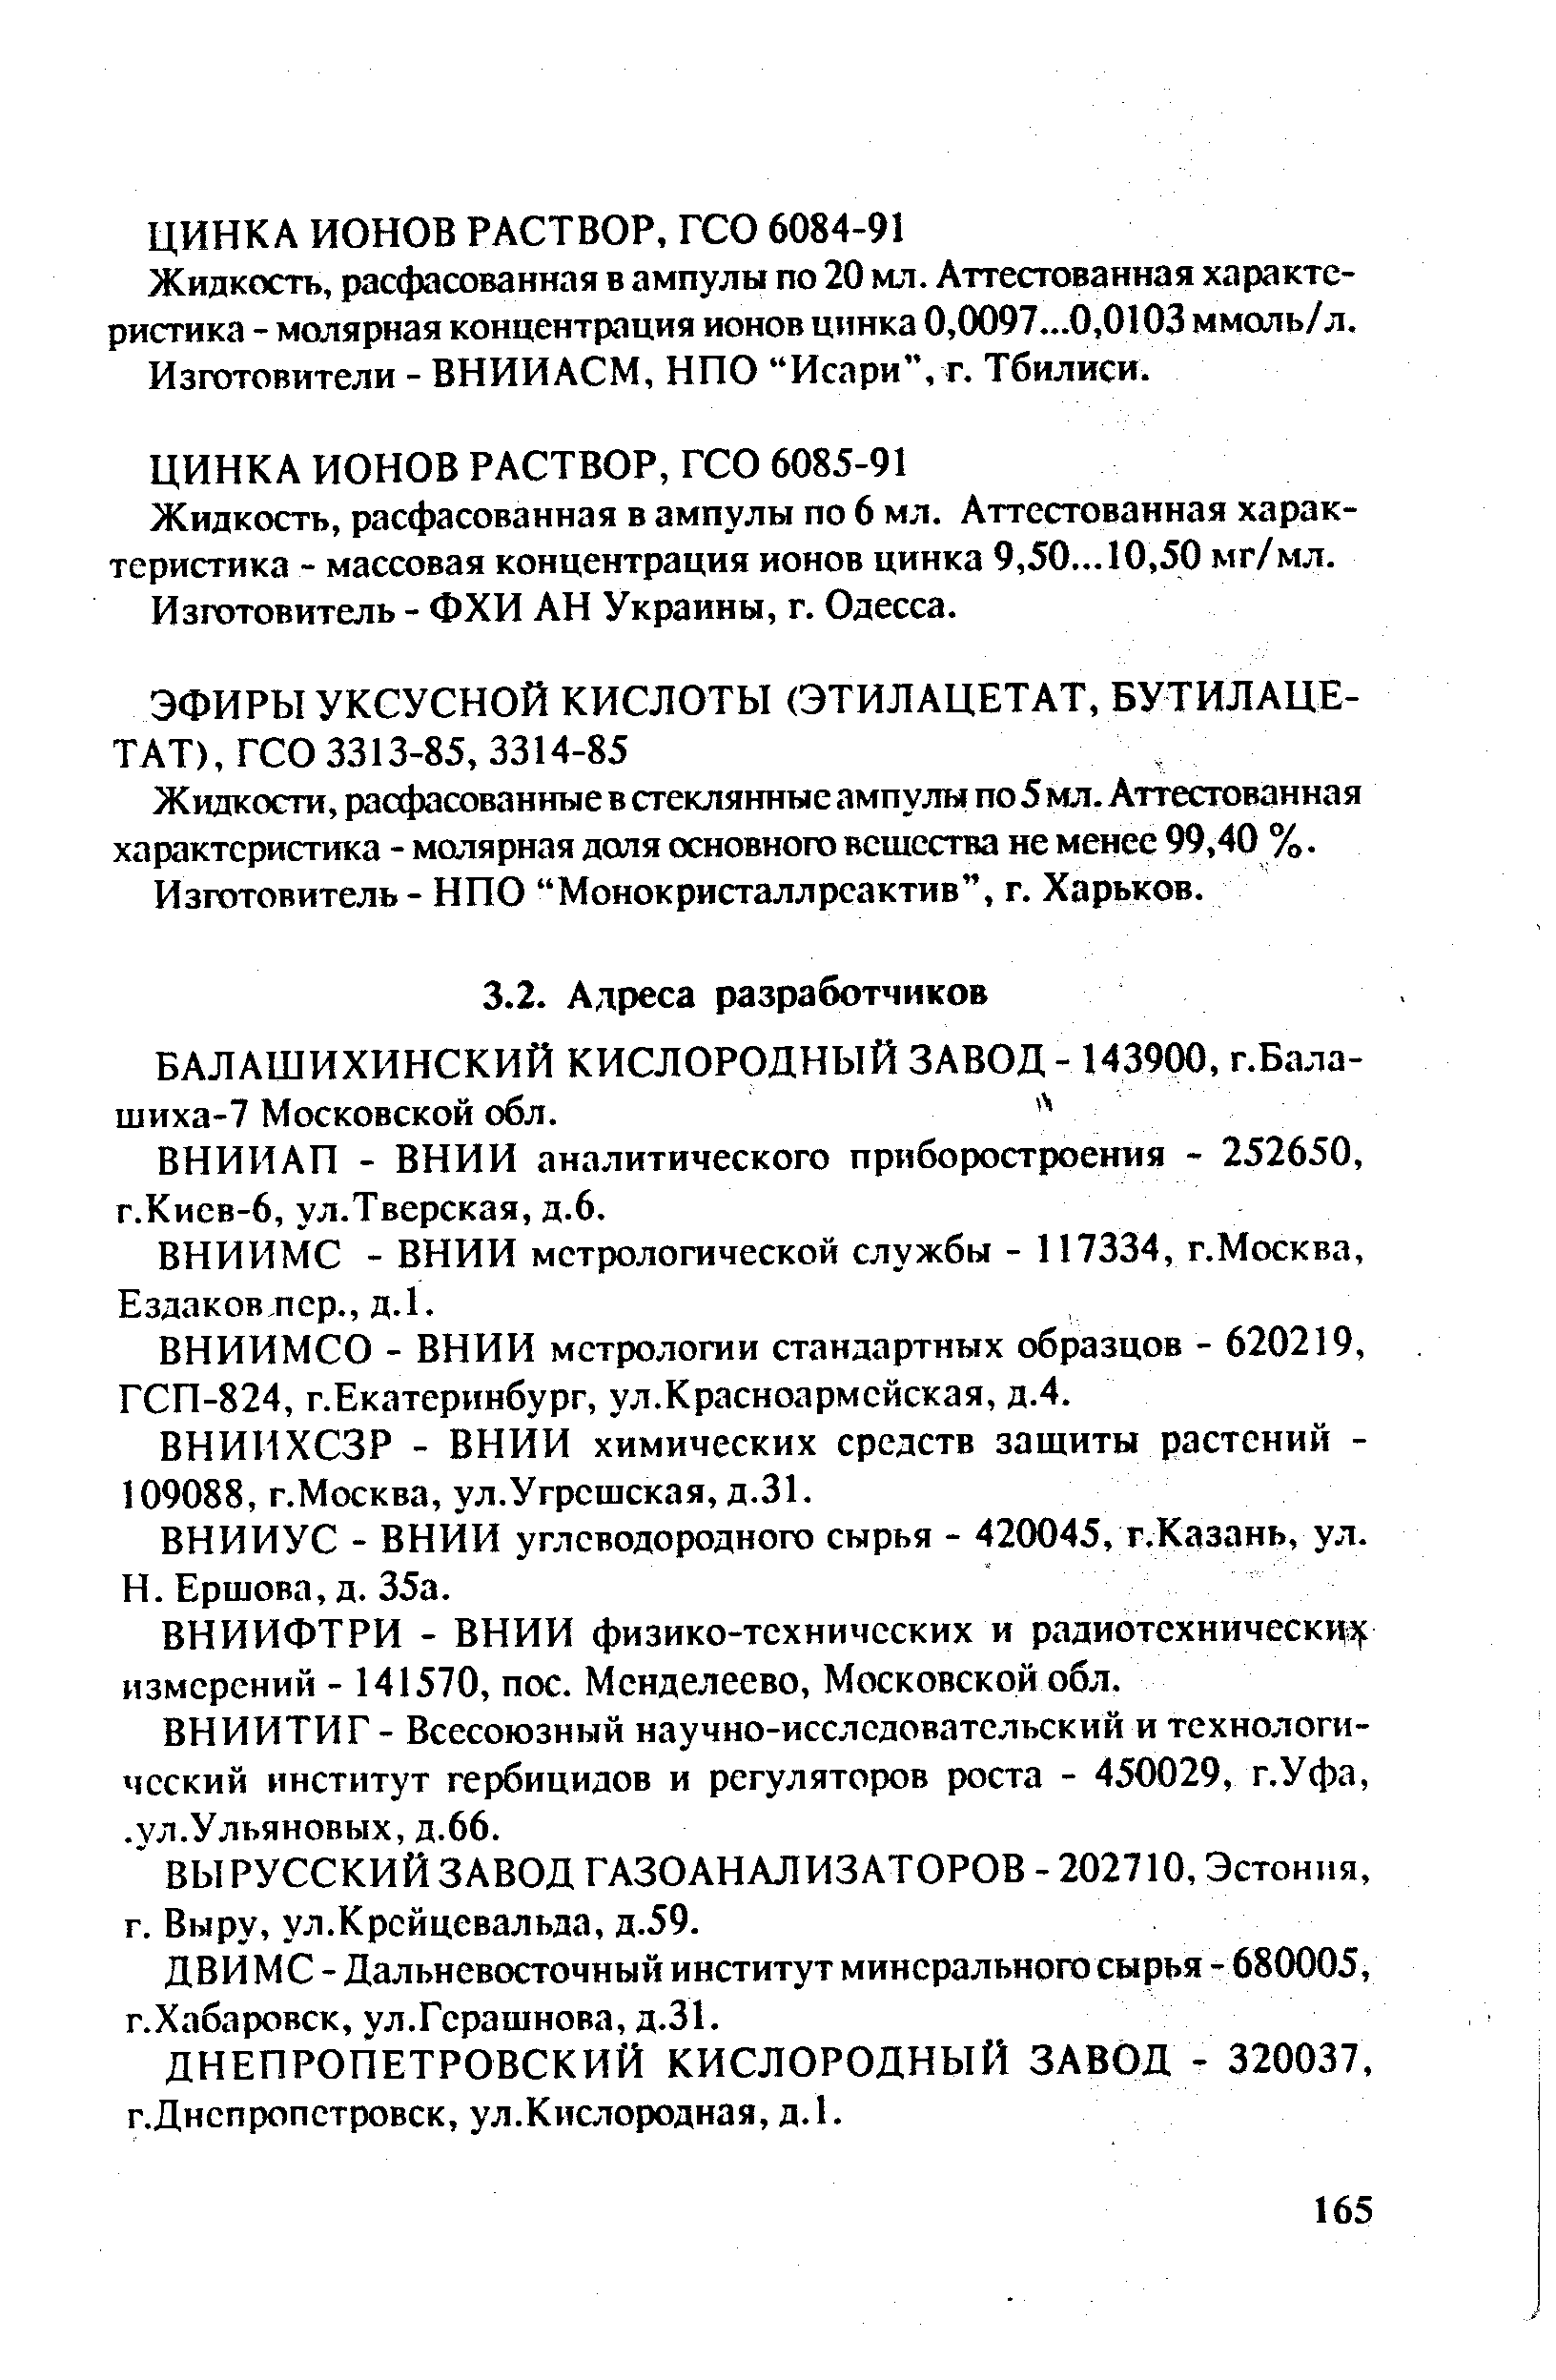 ВНИИУС - ВНИИ углеводородного сырья - 420045, г.Казань, ул.